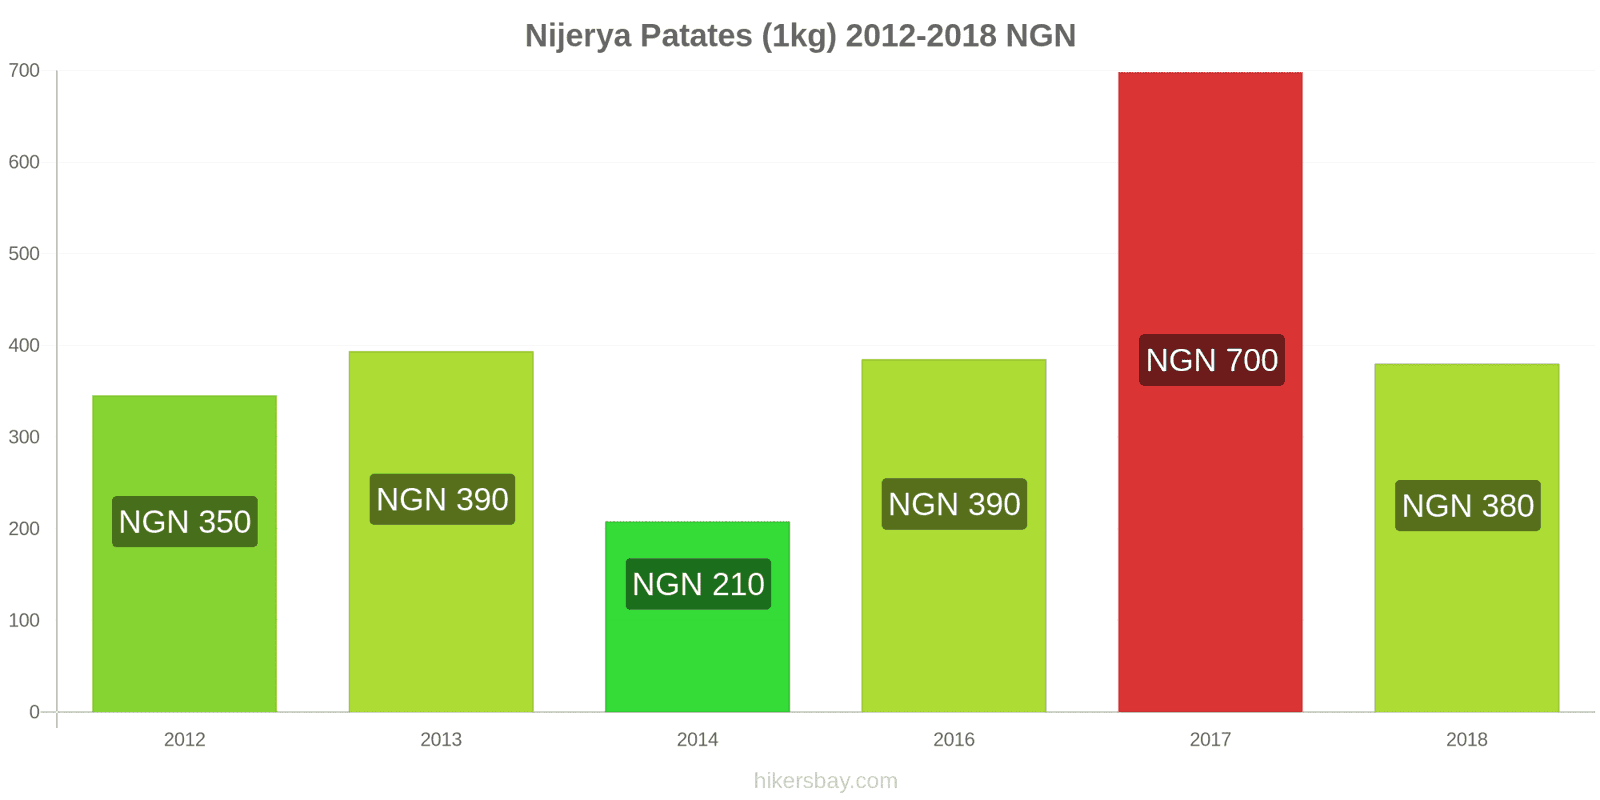 Nijerya fiyat değişiklikleri Patates (1kg) hikersbay.com